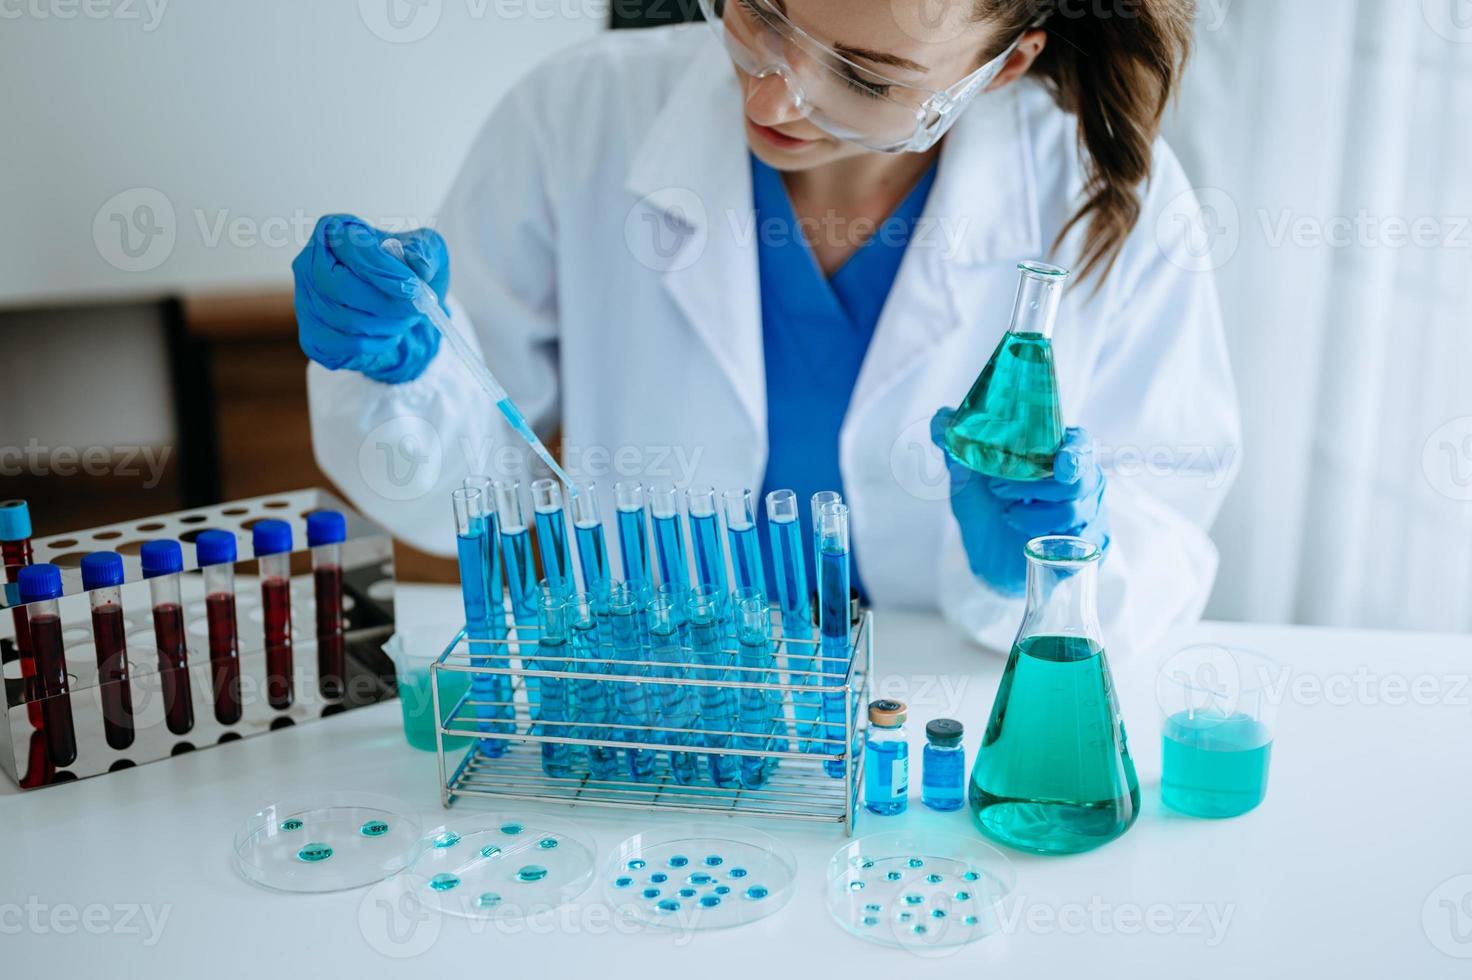 forskare blandning kemisk vätskor i de kemi labb. forskare arbetssätt i de kemisk laboratorium foto